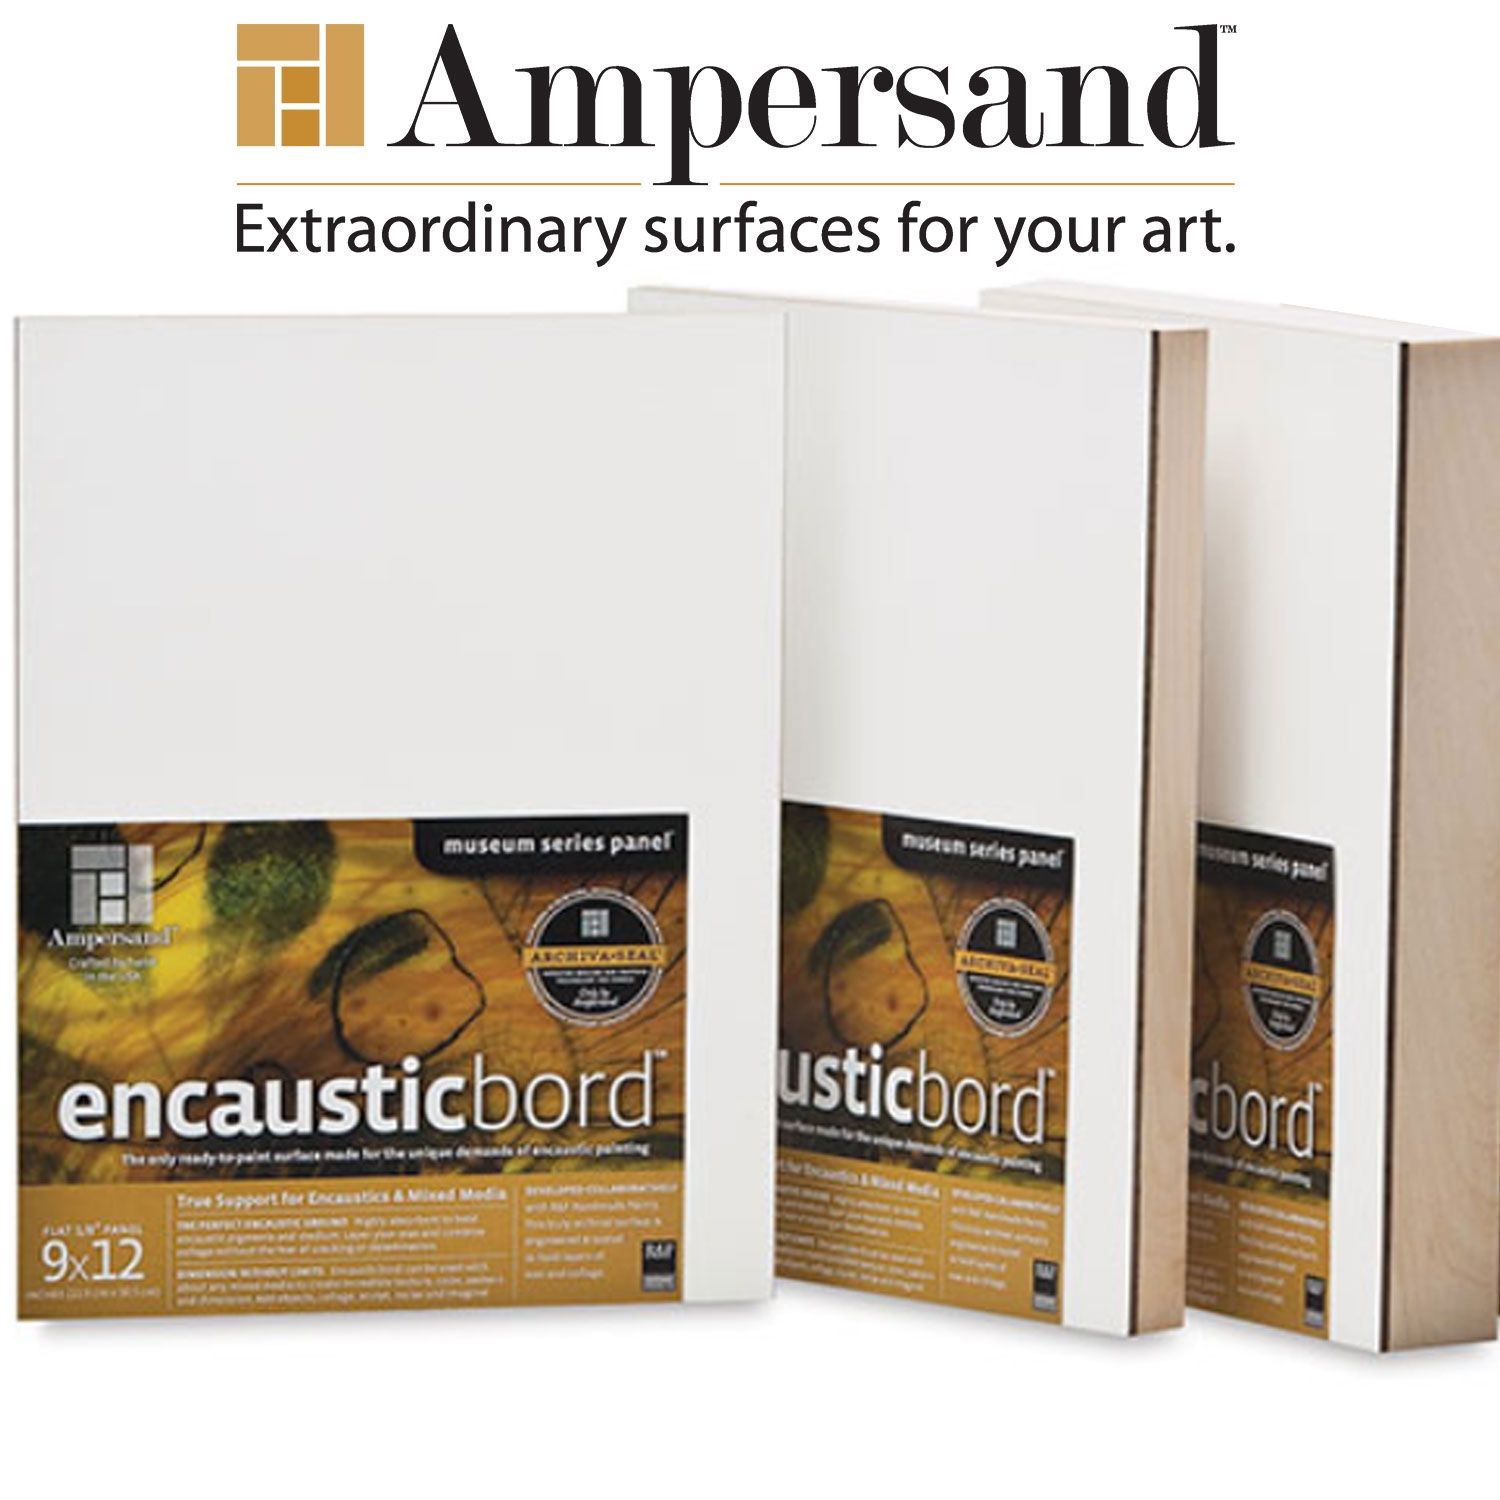 Ampersand Museum Series Encausticbords